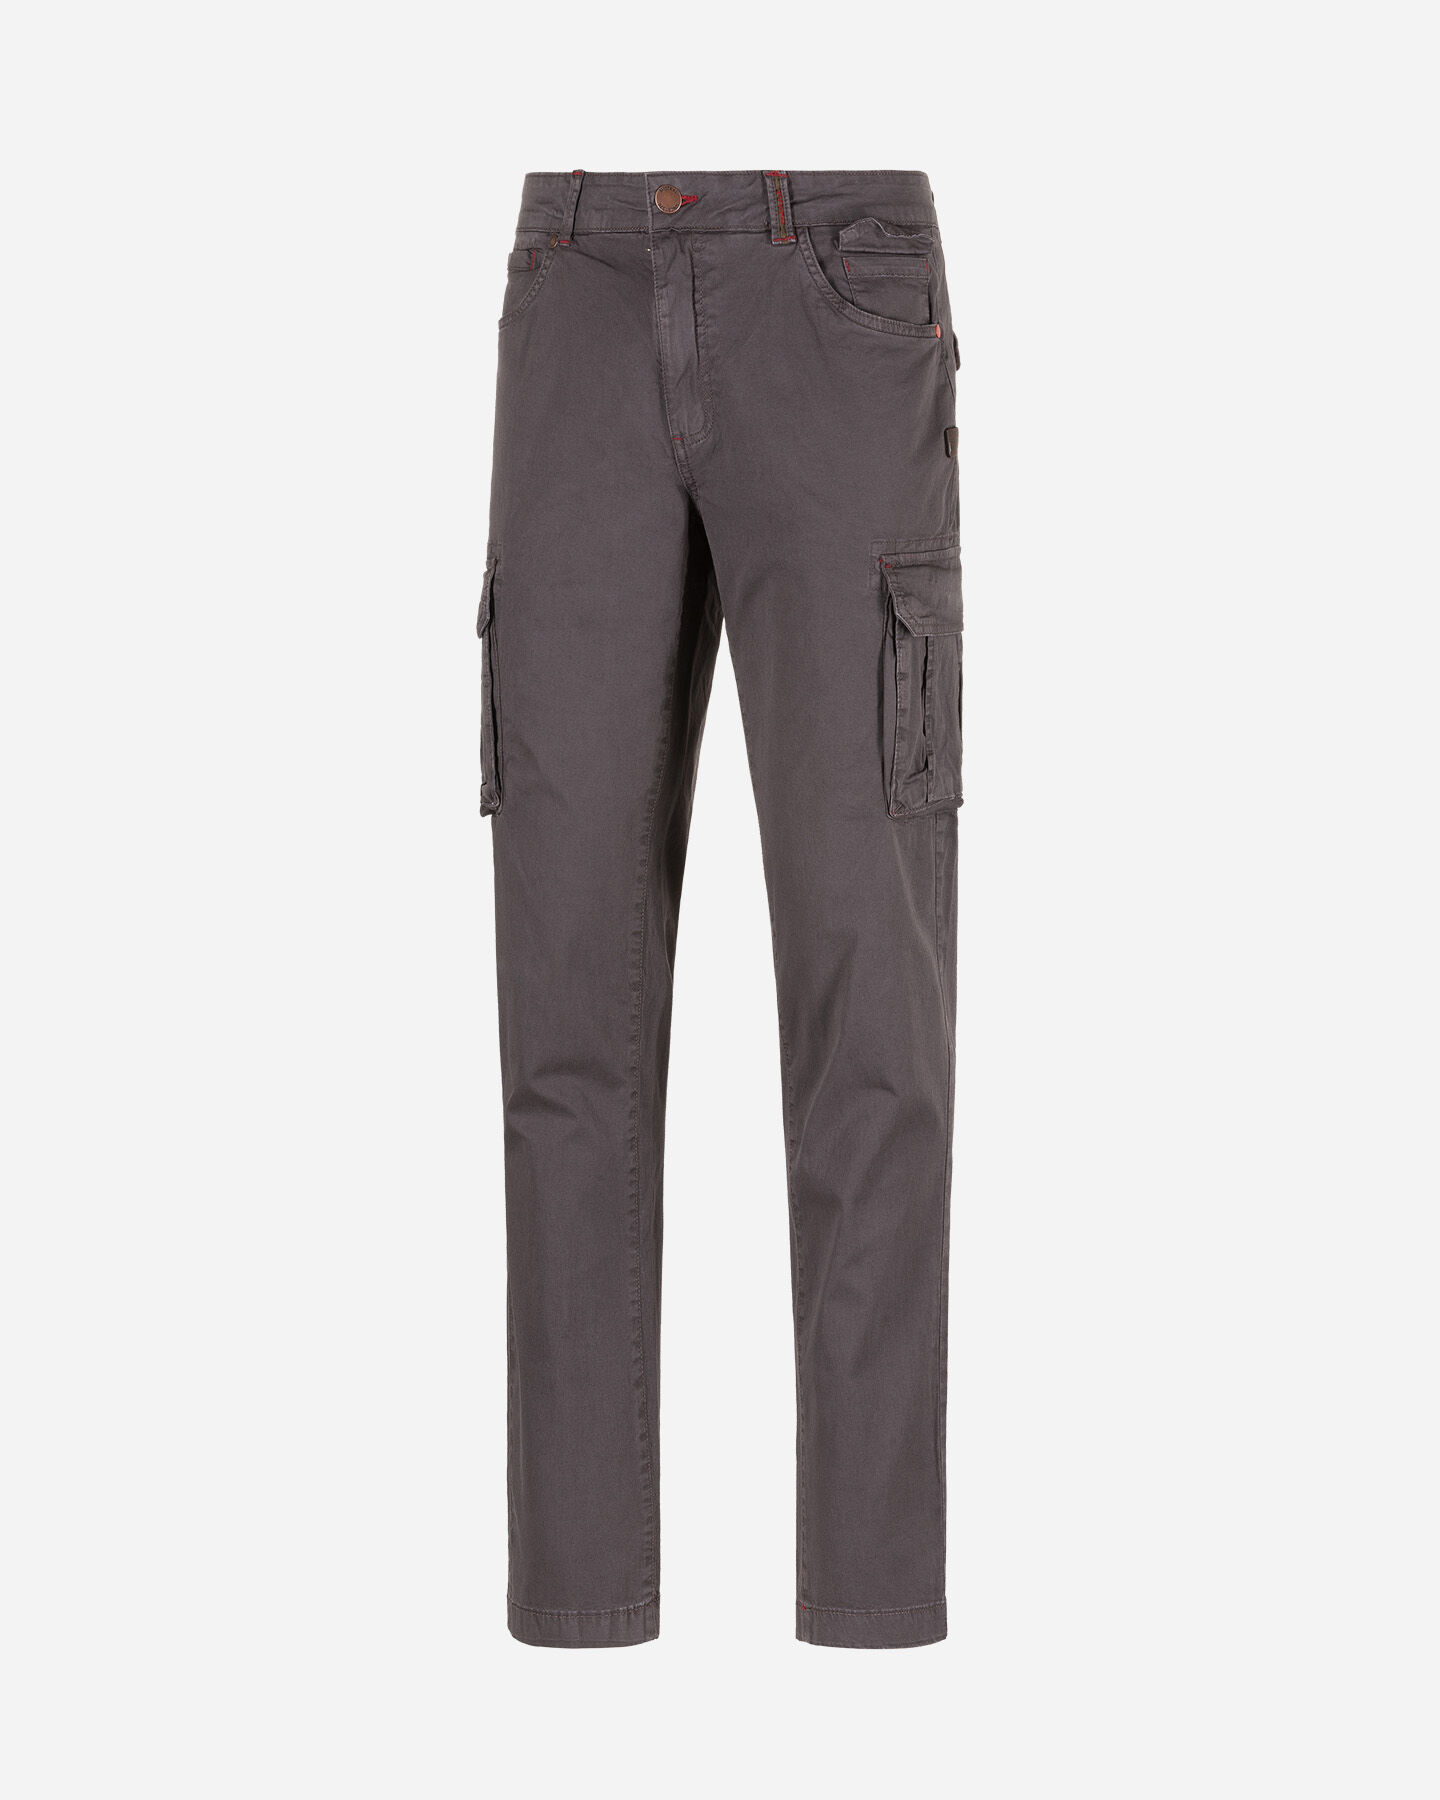  Pantalone MISTRAL CARGO M S4074985|057|42 scatto 0